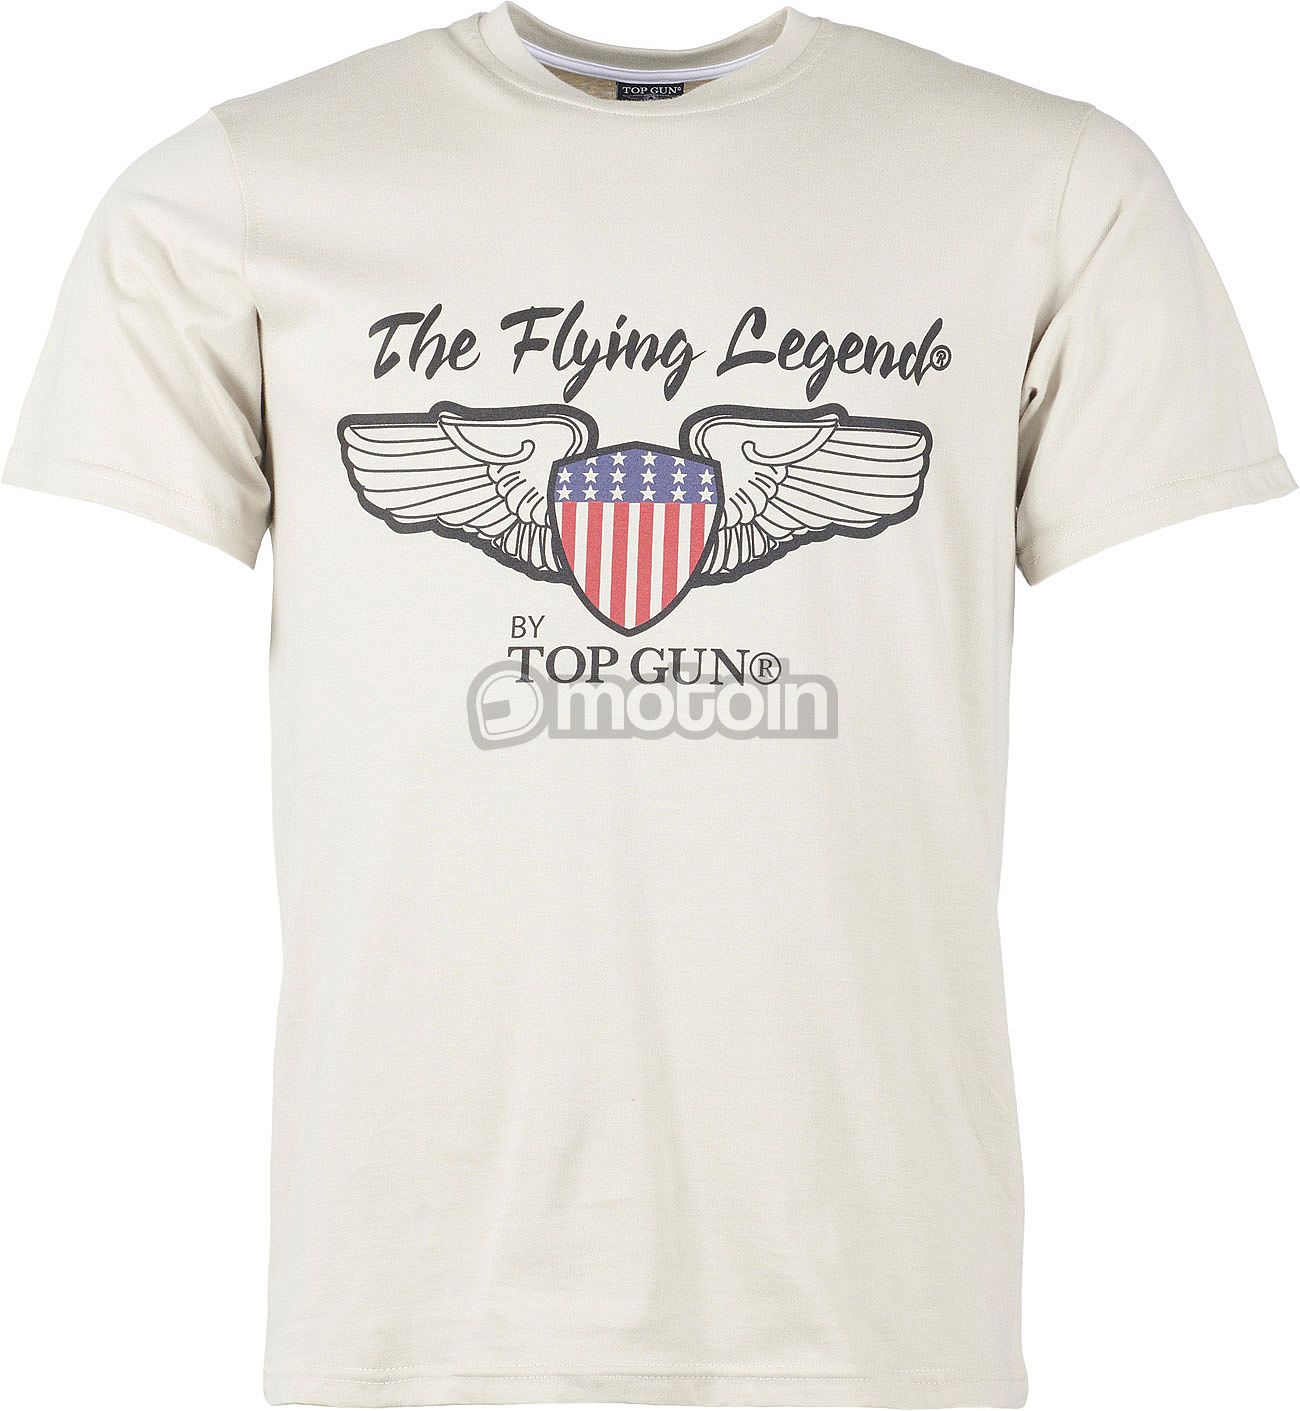 Top Gun Fly high, T-Shirt